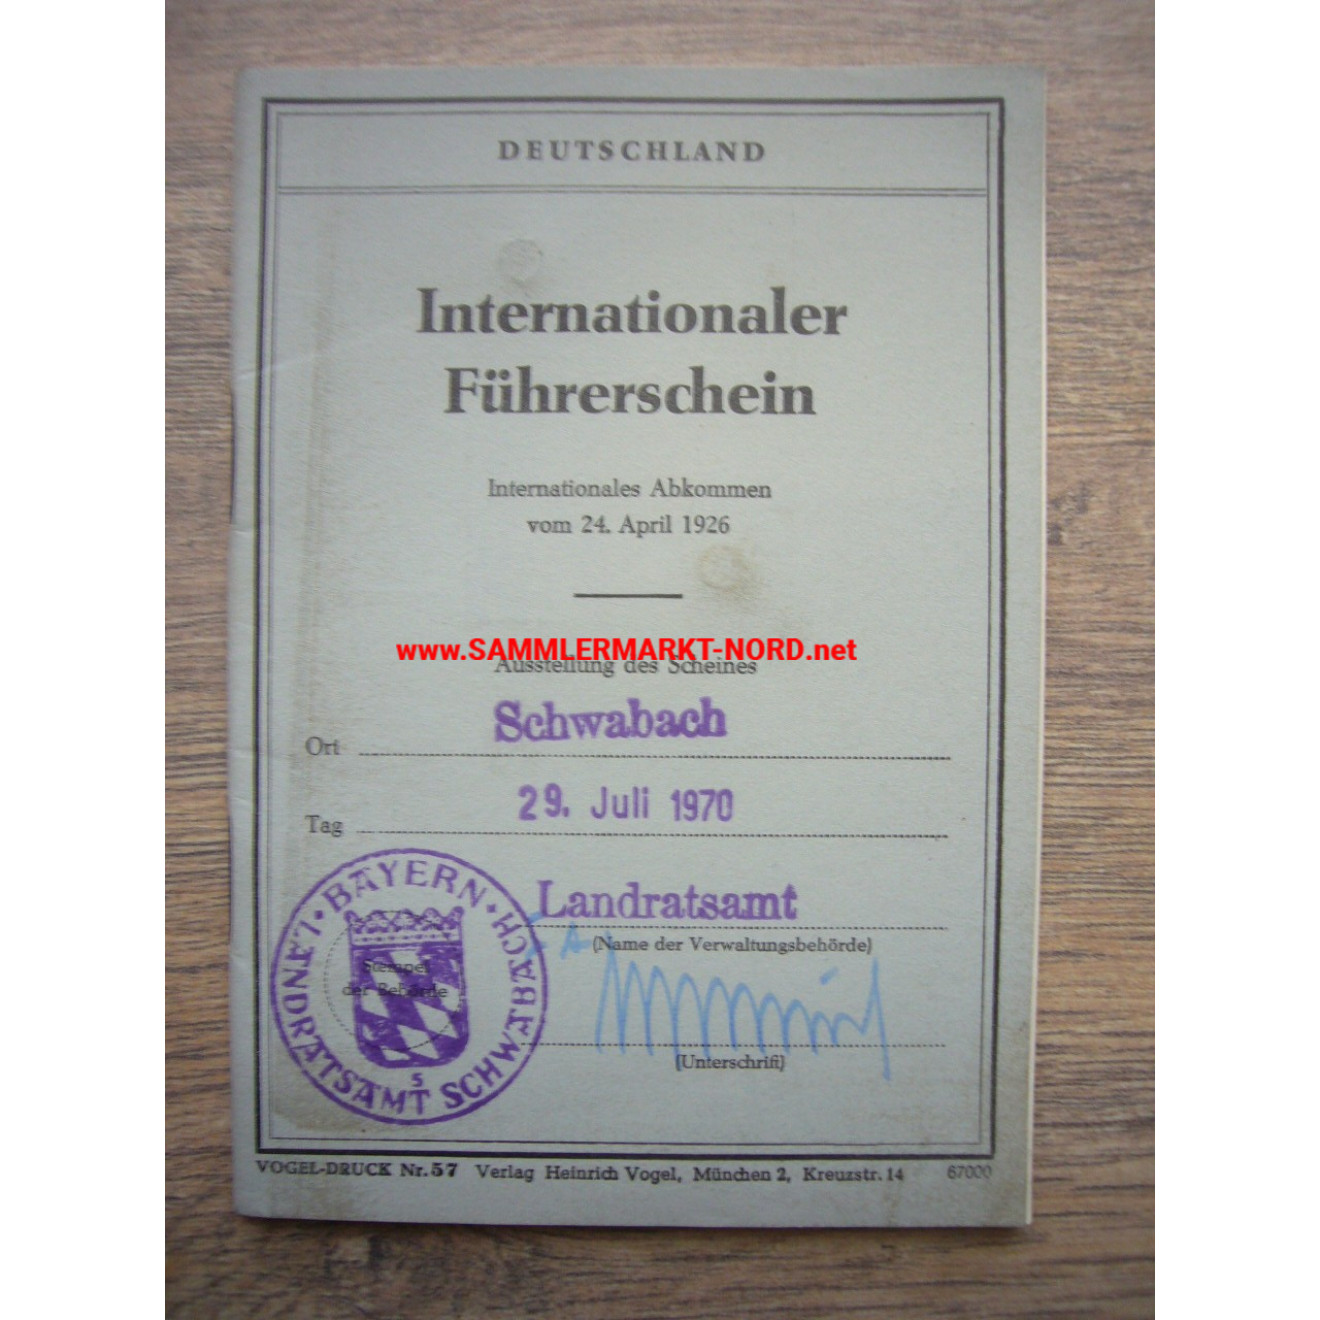 BRD - Internationaler Führerschein - Schwabach 1970